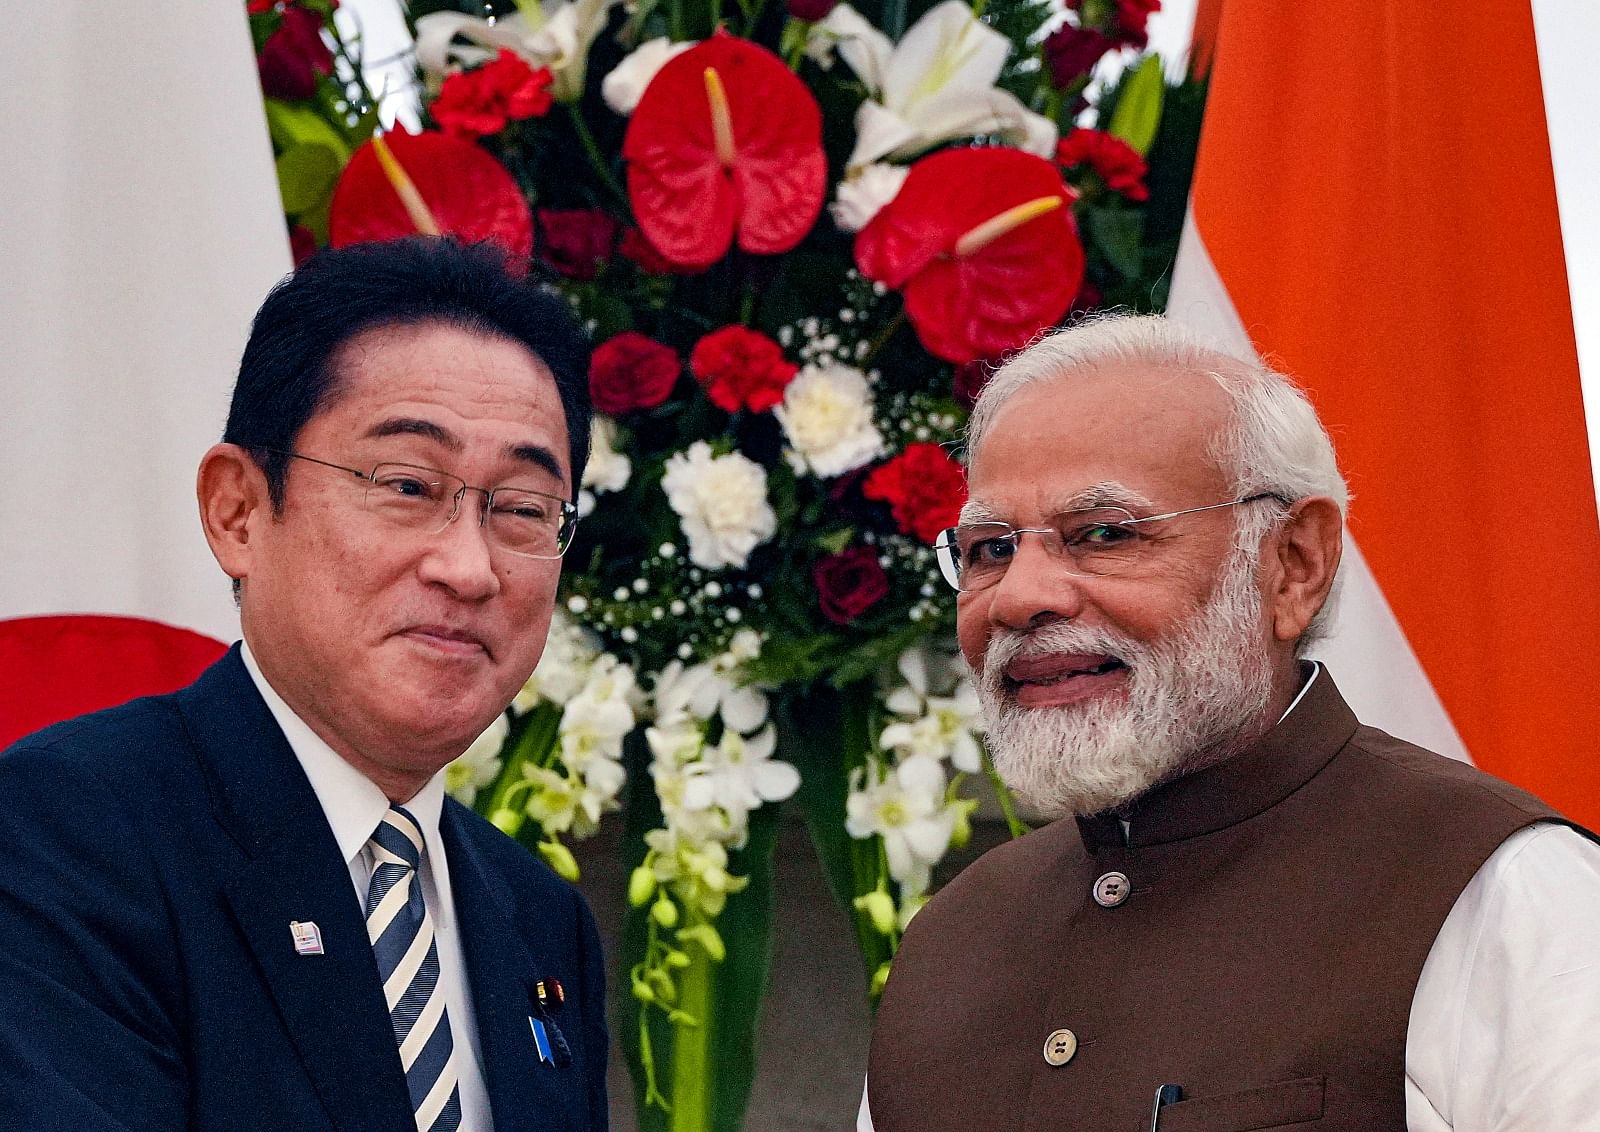 <div class="paragraphs"><p>प्रधानमंत्री नरेंद्र मोदी और उनके जापानी समकक्ष फुमियो किशिदा ने सोमवार को द्विपक्षीय चर्चा की</p></div>